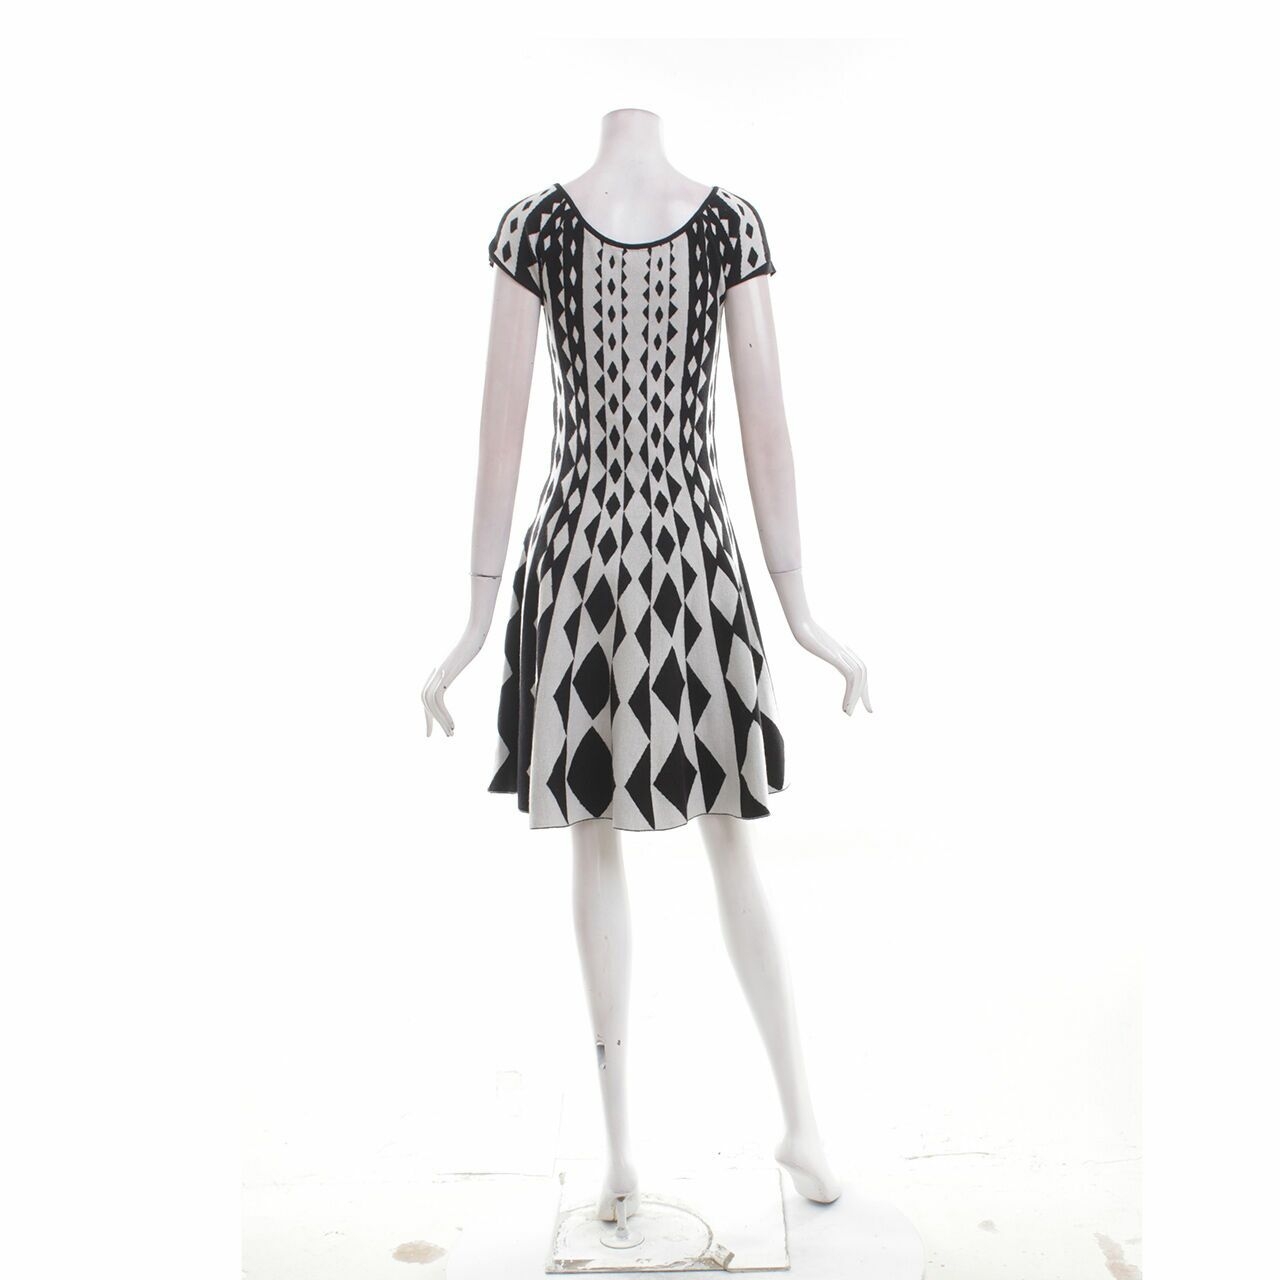 IRoo Black & White Patterned Mini Dress